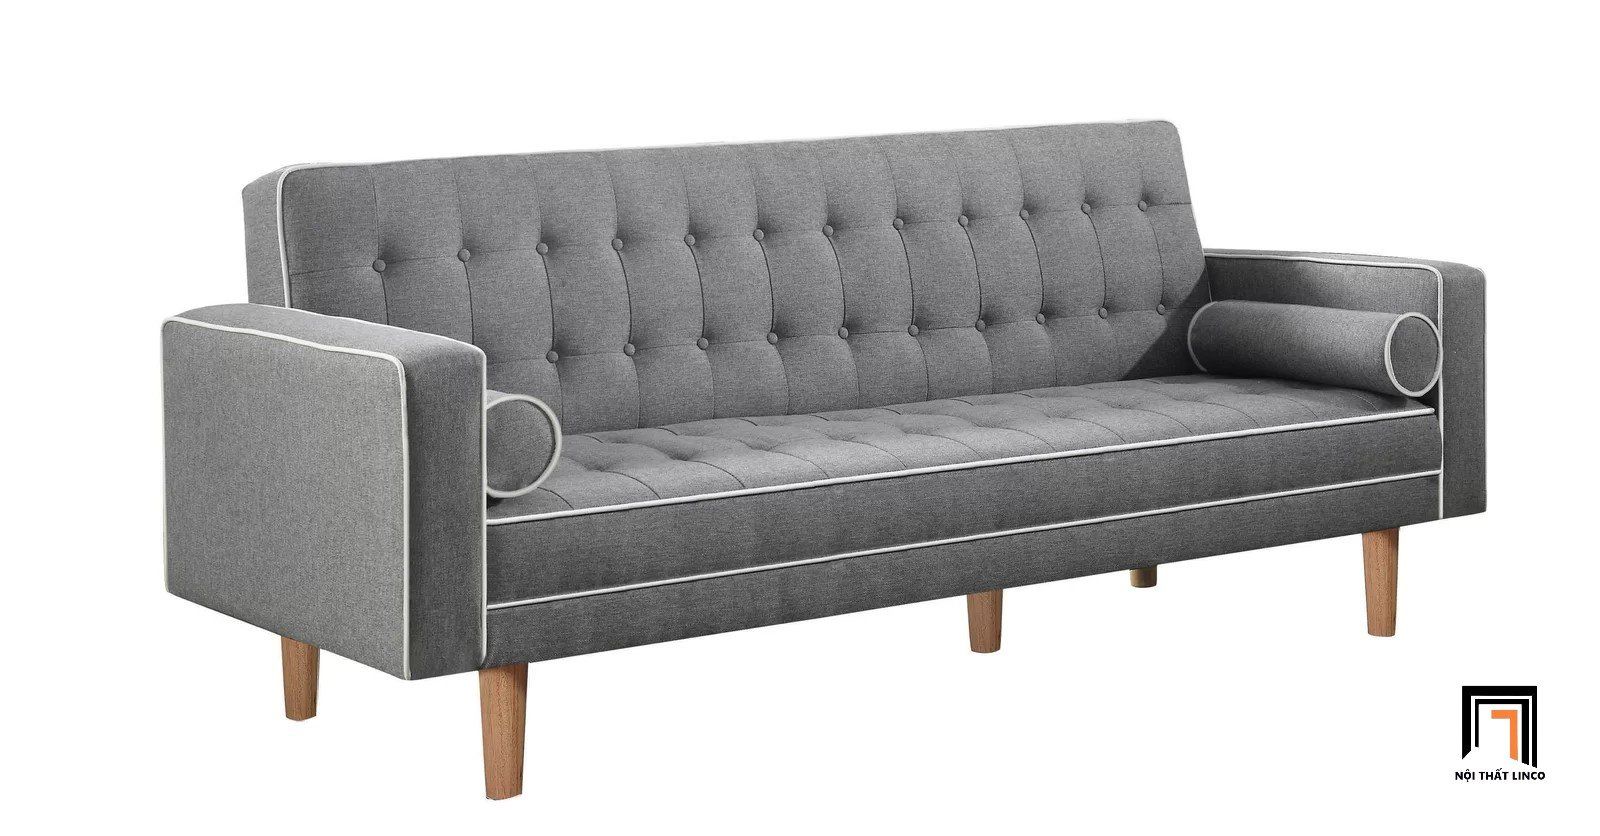  Ghế sofa giường nằm thông minh GB24 Brayden dài 2m 